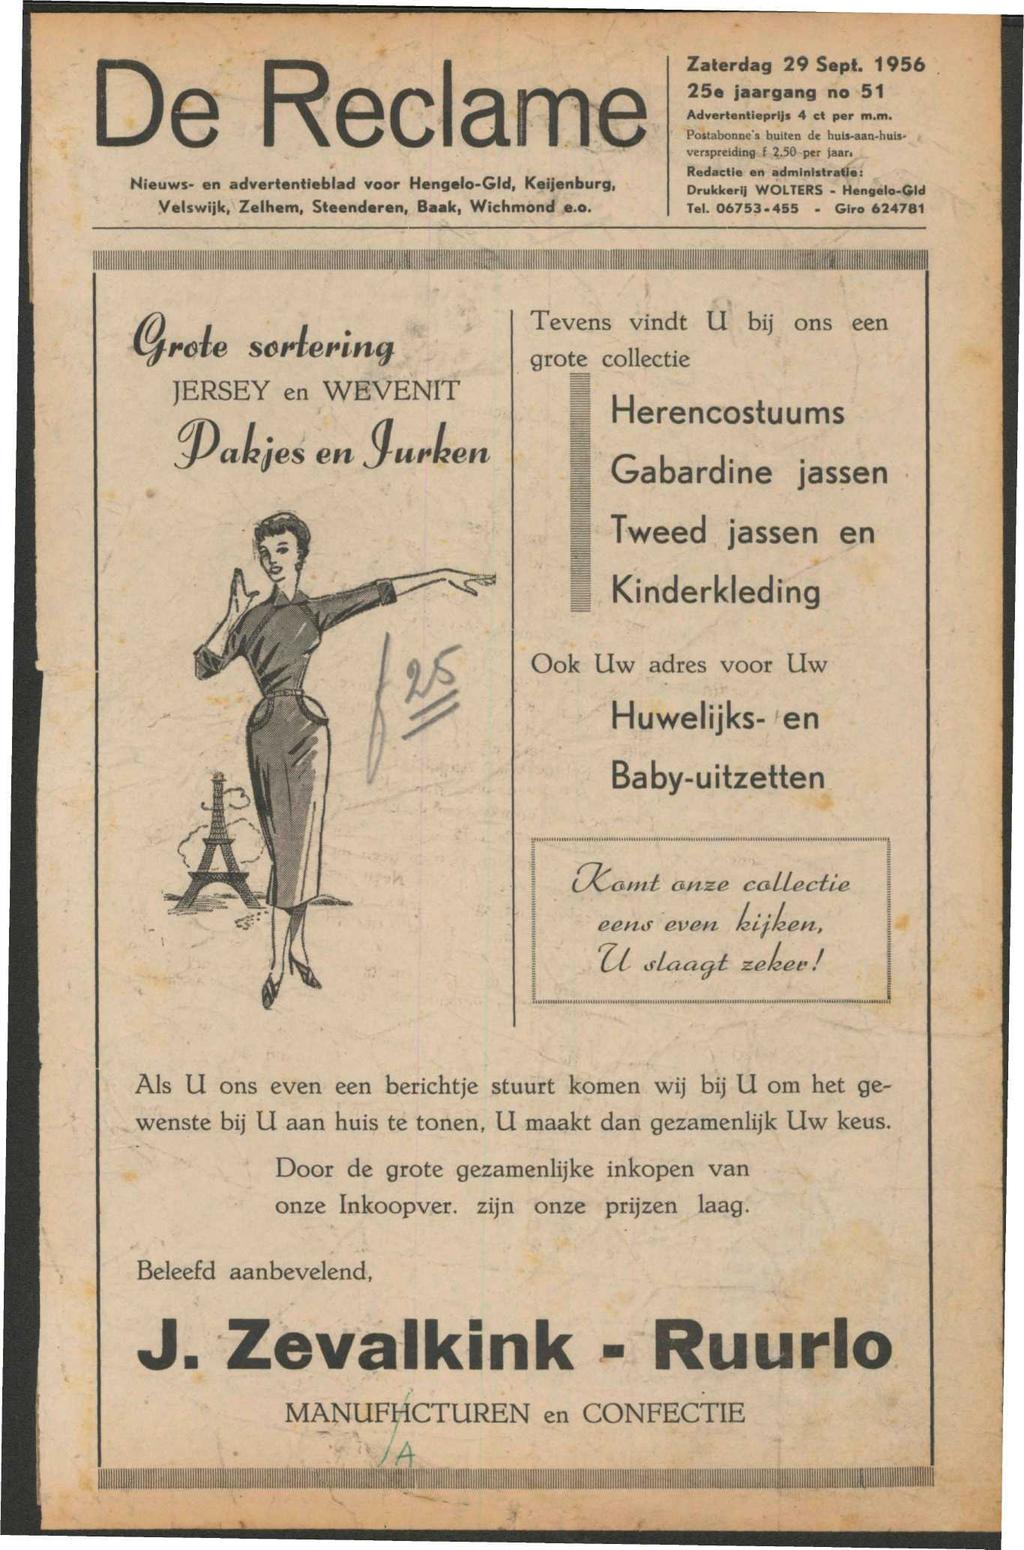 De Reclame Nieuws- adverttieblad voor Hgelo-Gld, Keijburg, Velswijk, Zelhem, Steder, Baak, Wichmond e.o. Zaterdag 29 Sept. 1956 25e jaargang no 51 Adverttieprijs 4 et per m.m. Postabonnc's buit de huis-aan-huisvcrspreiding f 2.